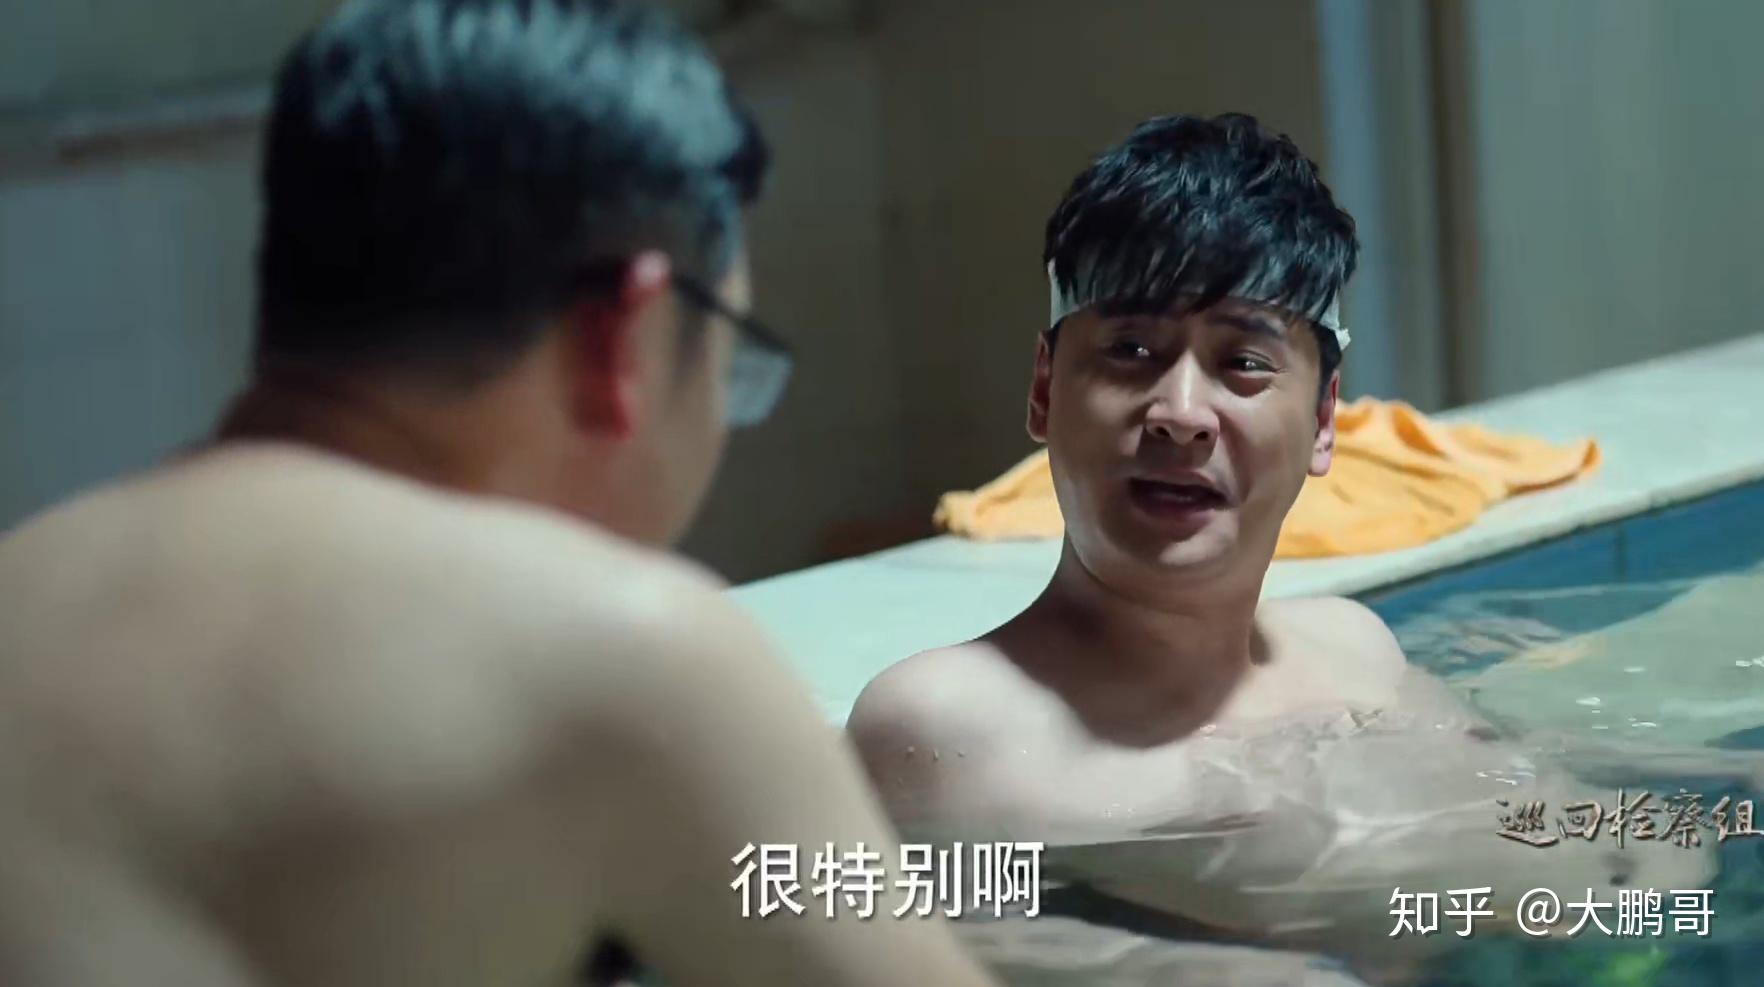 有网友问陈明忠的扮演者马元,他这个角色到底是忠是奸,他发了一张照片